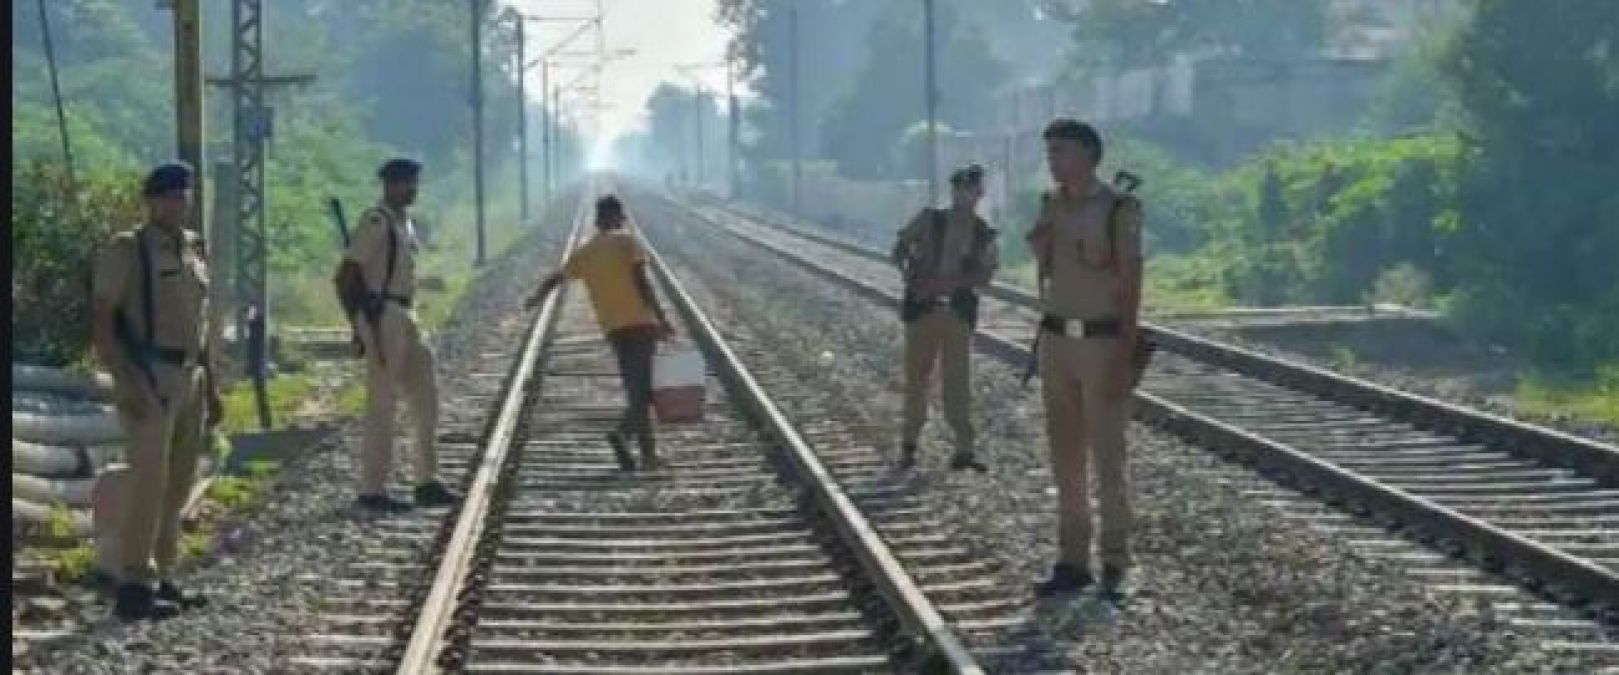 झारखंड: रेलवे ट्रैक उड़ाने के बाद धमकीभरा पोस्टर चिपका गए नक्सली, कई ट्रेनों का रूट बदला